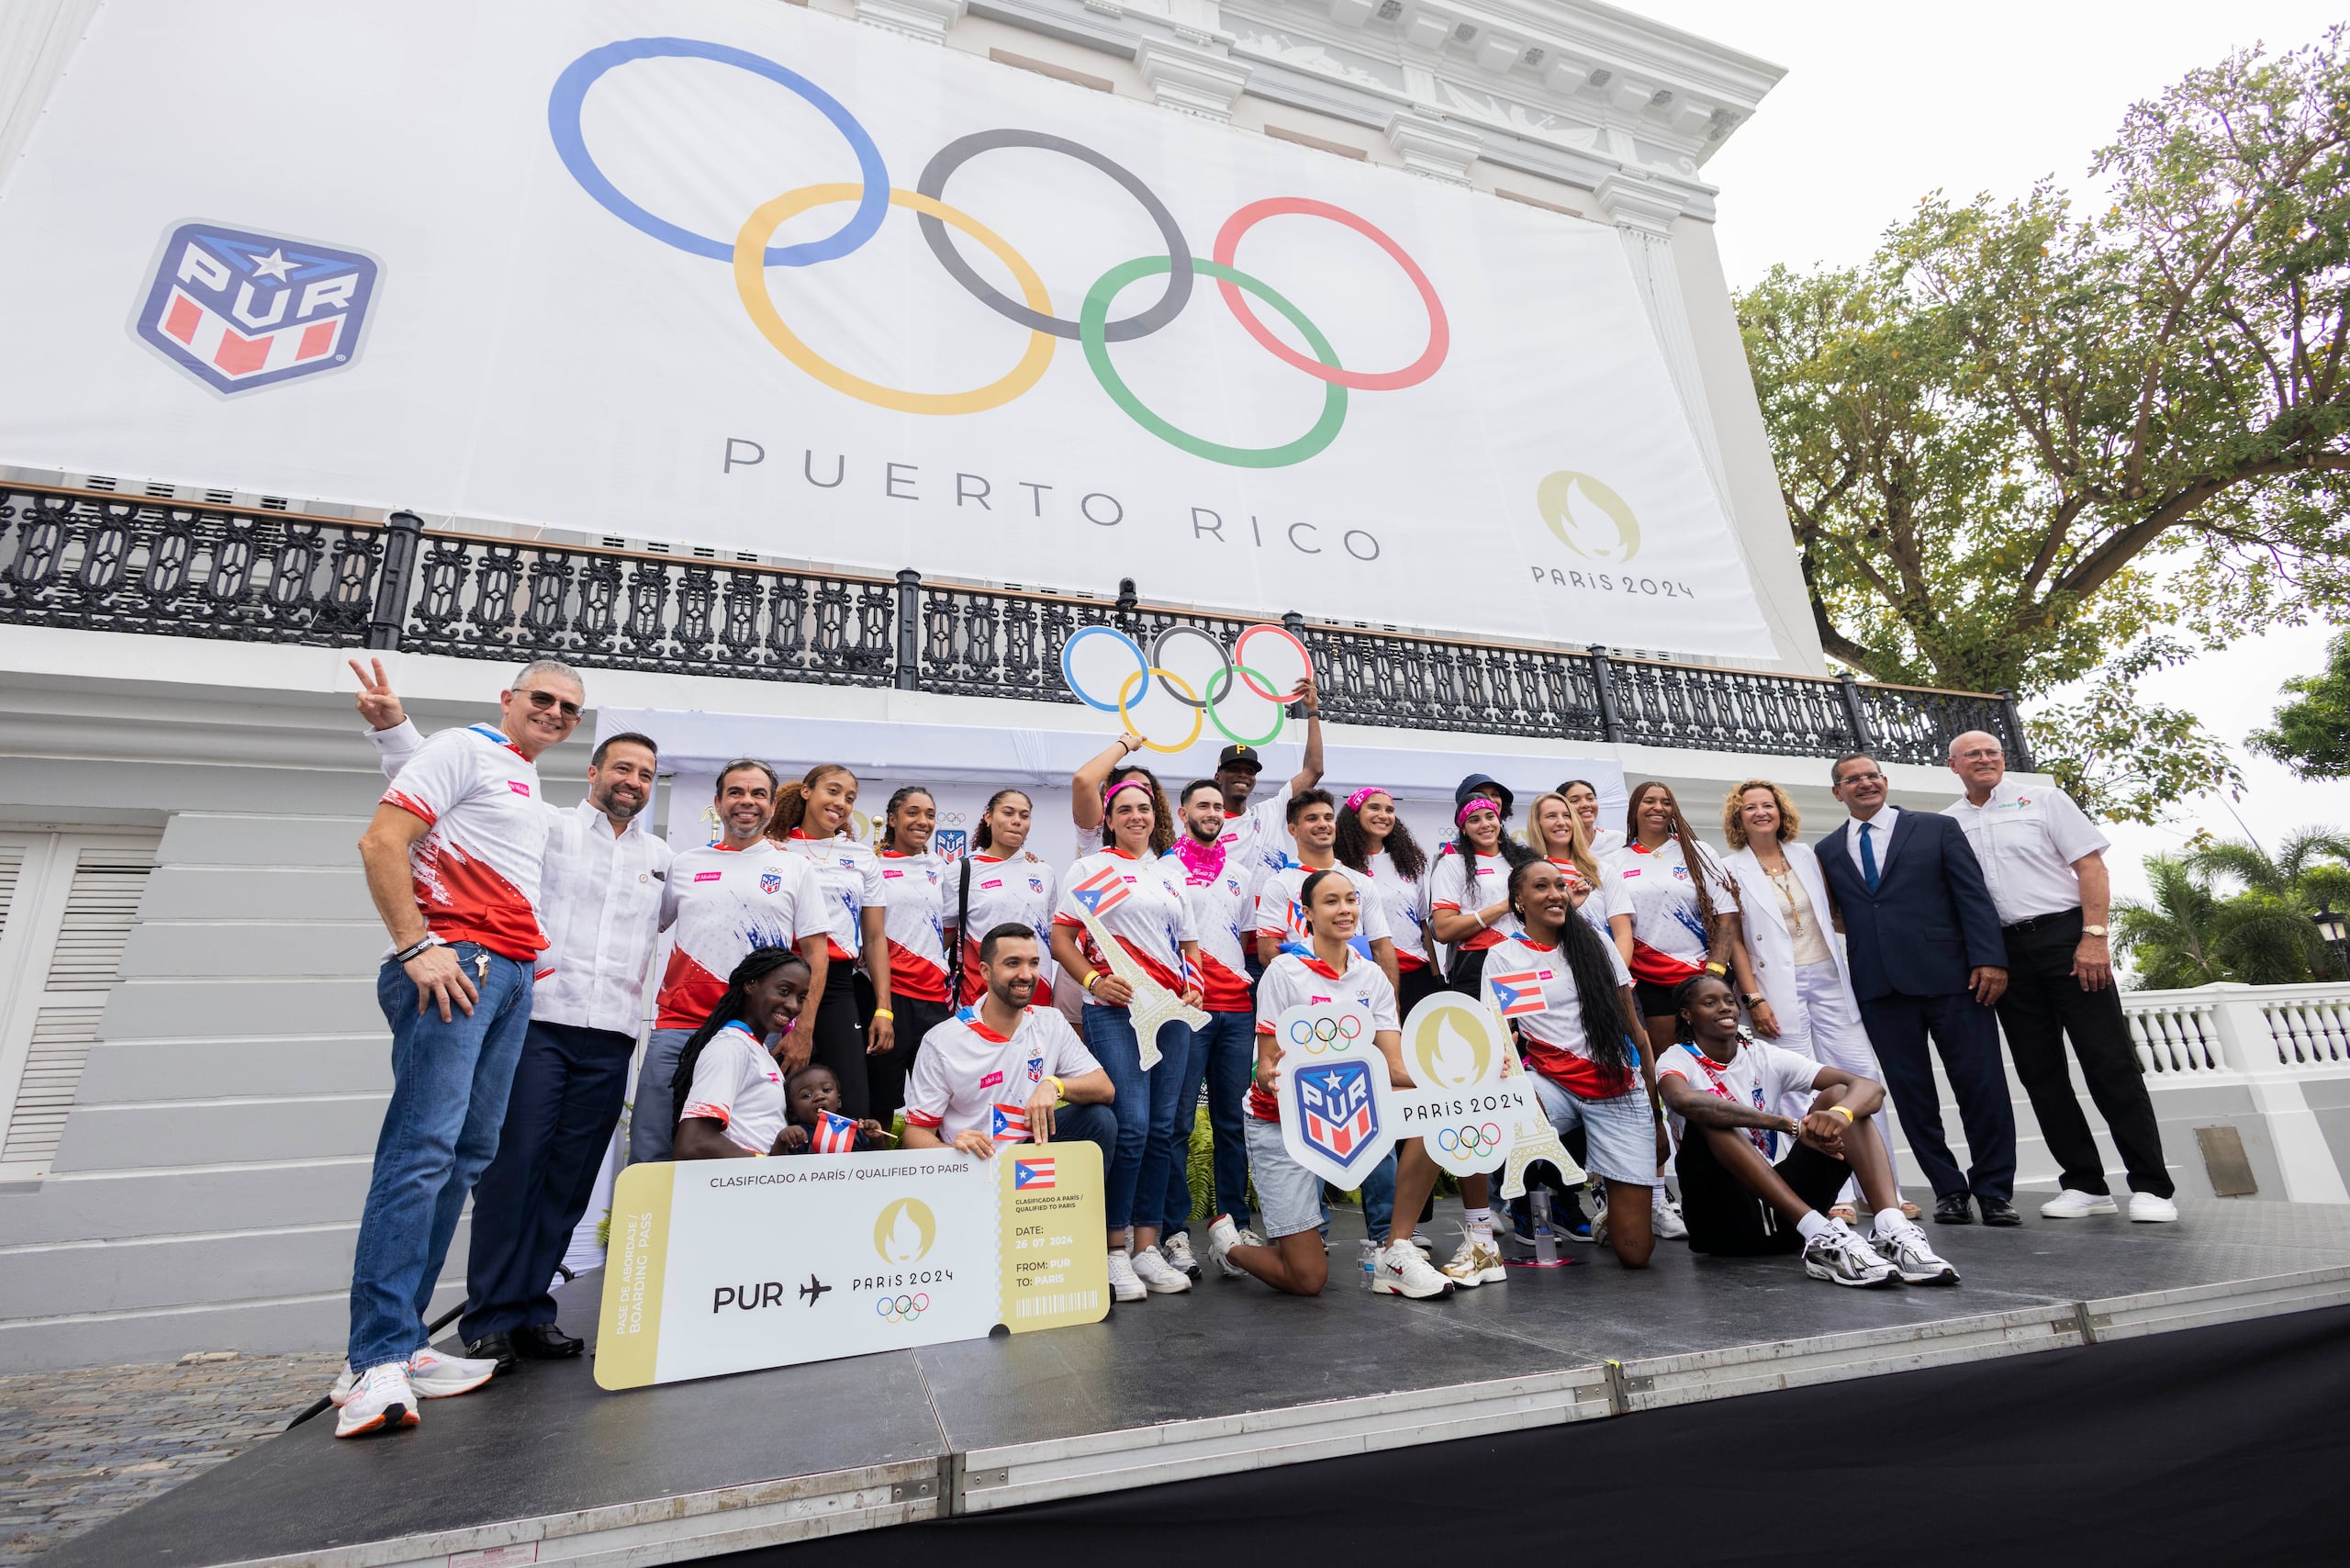 La delegación es la segunda que abandera Pedro Pierluisi para unos Juegos Olímpicos. También tuvo esa encomienda con la delegación que fue a Tokio 2020 en el verano del 2021.